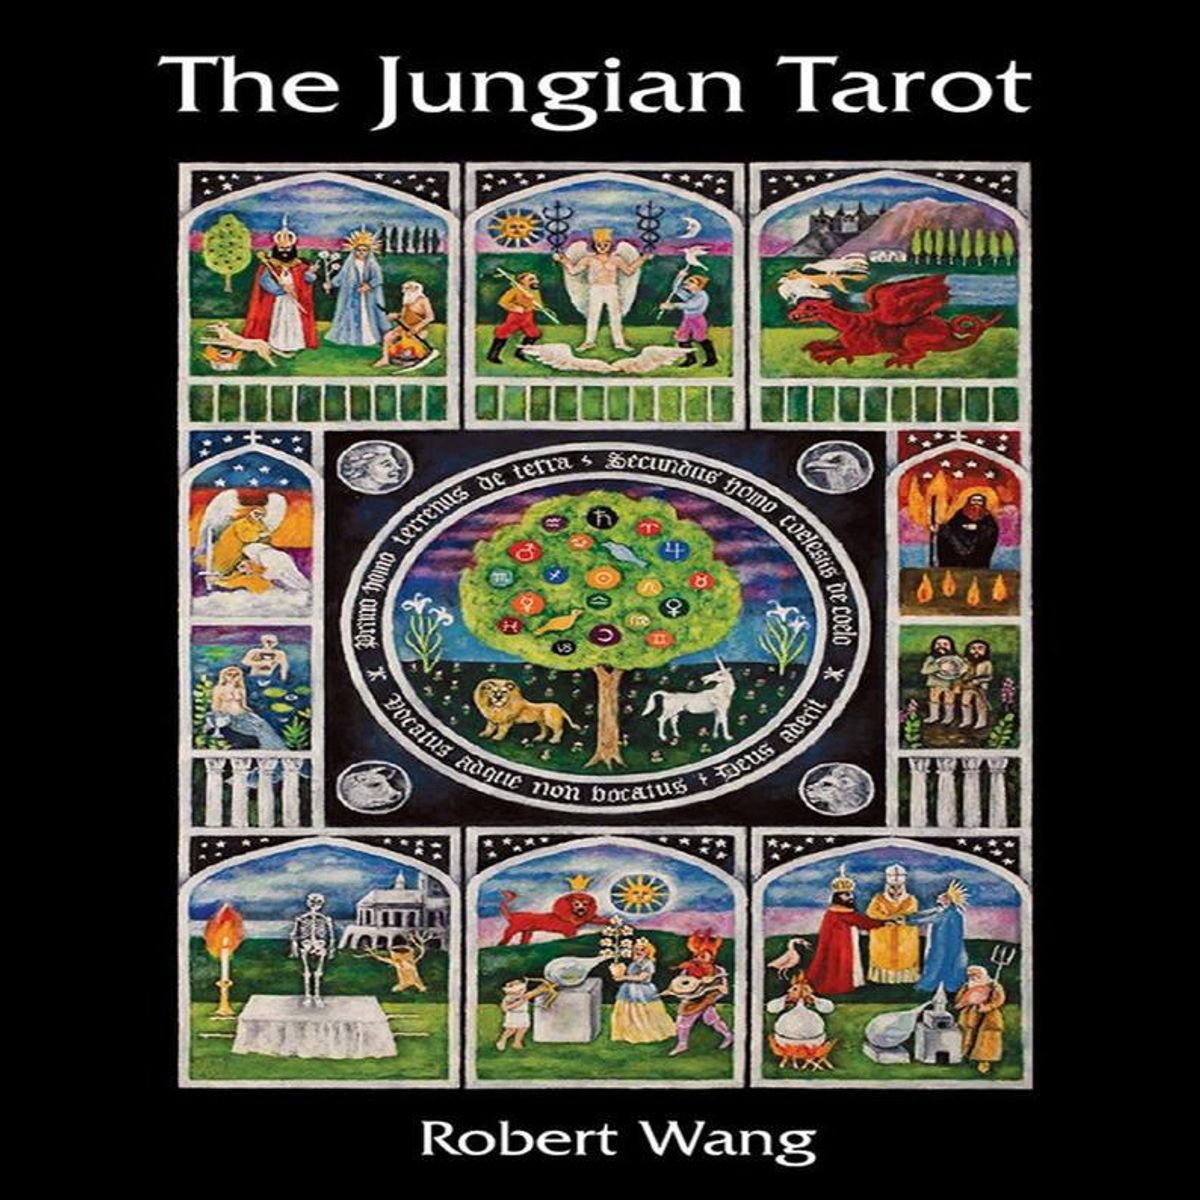 robert wang the jungian tarot deck